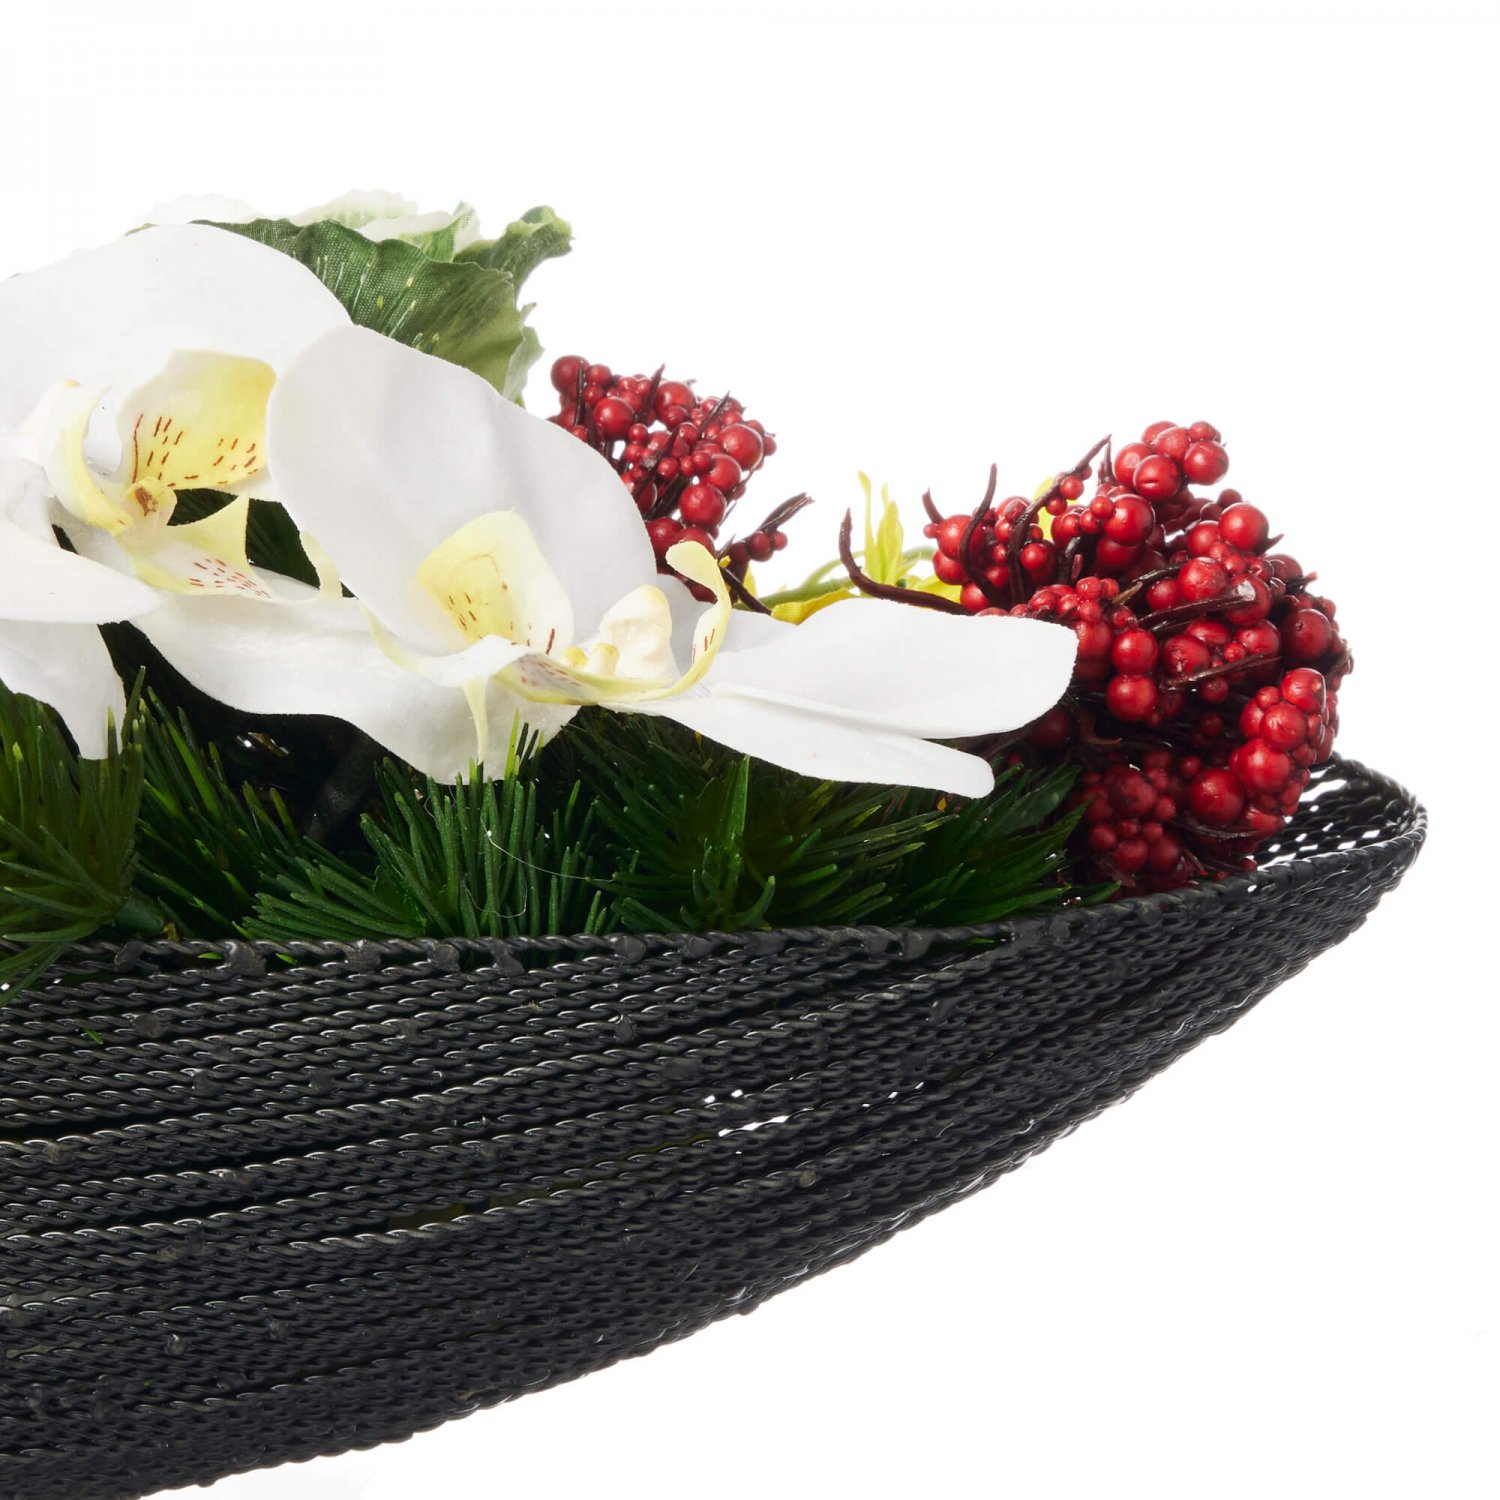 お正月飾り 胡蝶蘭×葉ボタン テーブル 造花 フラワーアレンジメント 